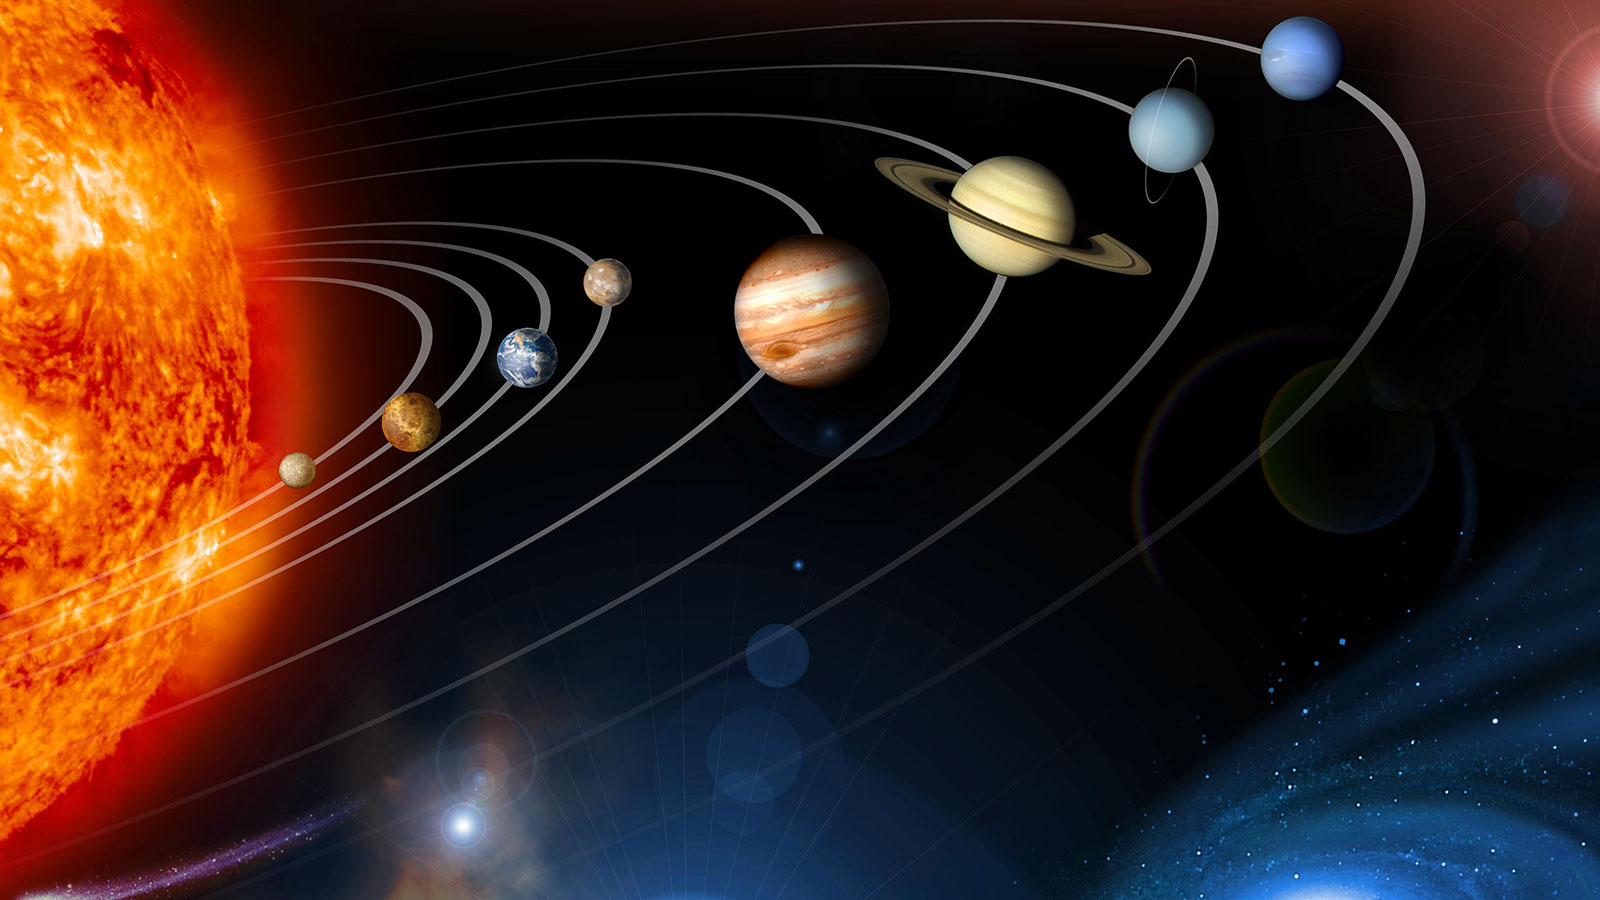 Es gibt viele gute Gründe, warum wir unsere kosmische Nachbarschaft erkunden sollten. Einmal haben die Himmelskörper um uns herum einen Einfluss auf das Leben auf der Erde: nicht nur die Sonne mit ihrer Strahlung, sondern auch der Mond mit Ebbe und Flut – und manchmal auch Asteroiden, wenn sie der Erde gefährlich nahe kommen. Außerdem ist es einfach faszinierend, mehr über andere Planeten und Monde zu erfahren. Oft lernen wir dadurch auch viel über die Geschichte unseres eigenen Planeten. Bild: NASA/JPL